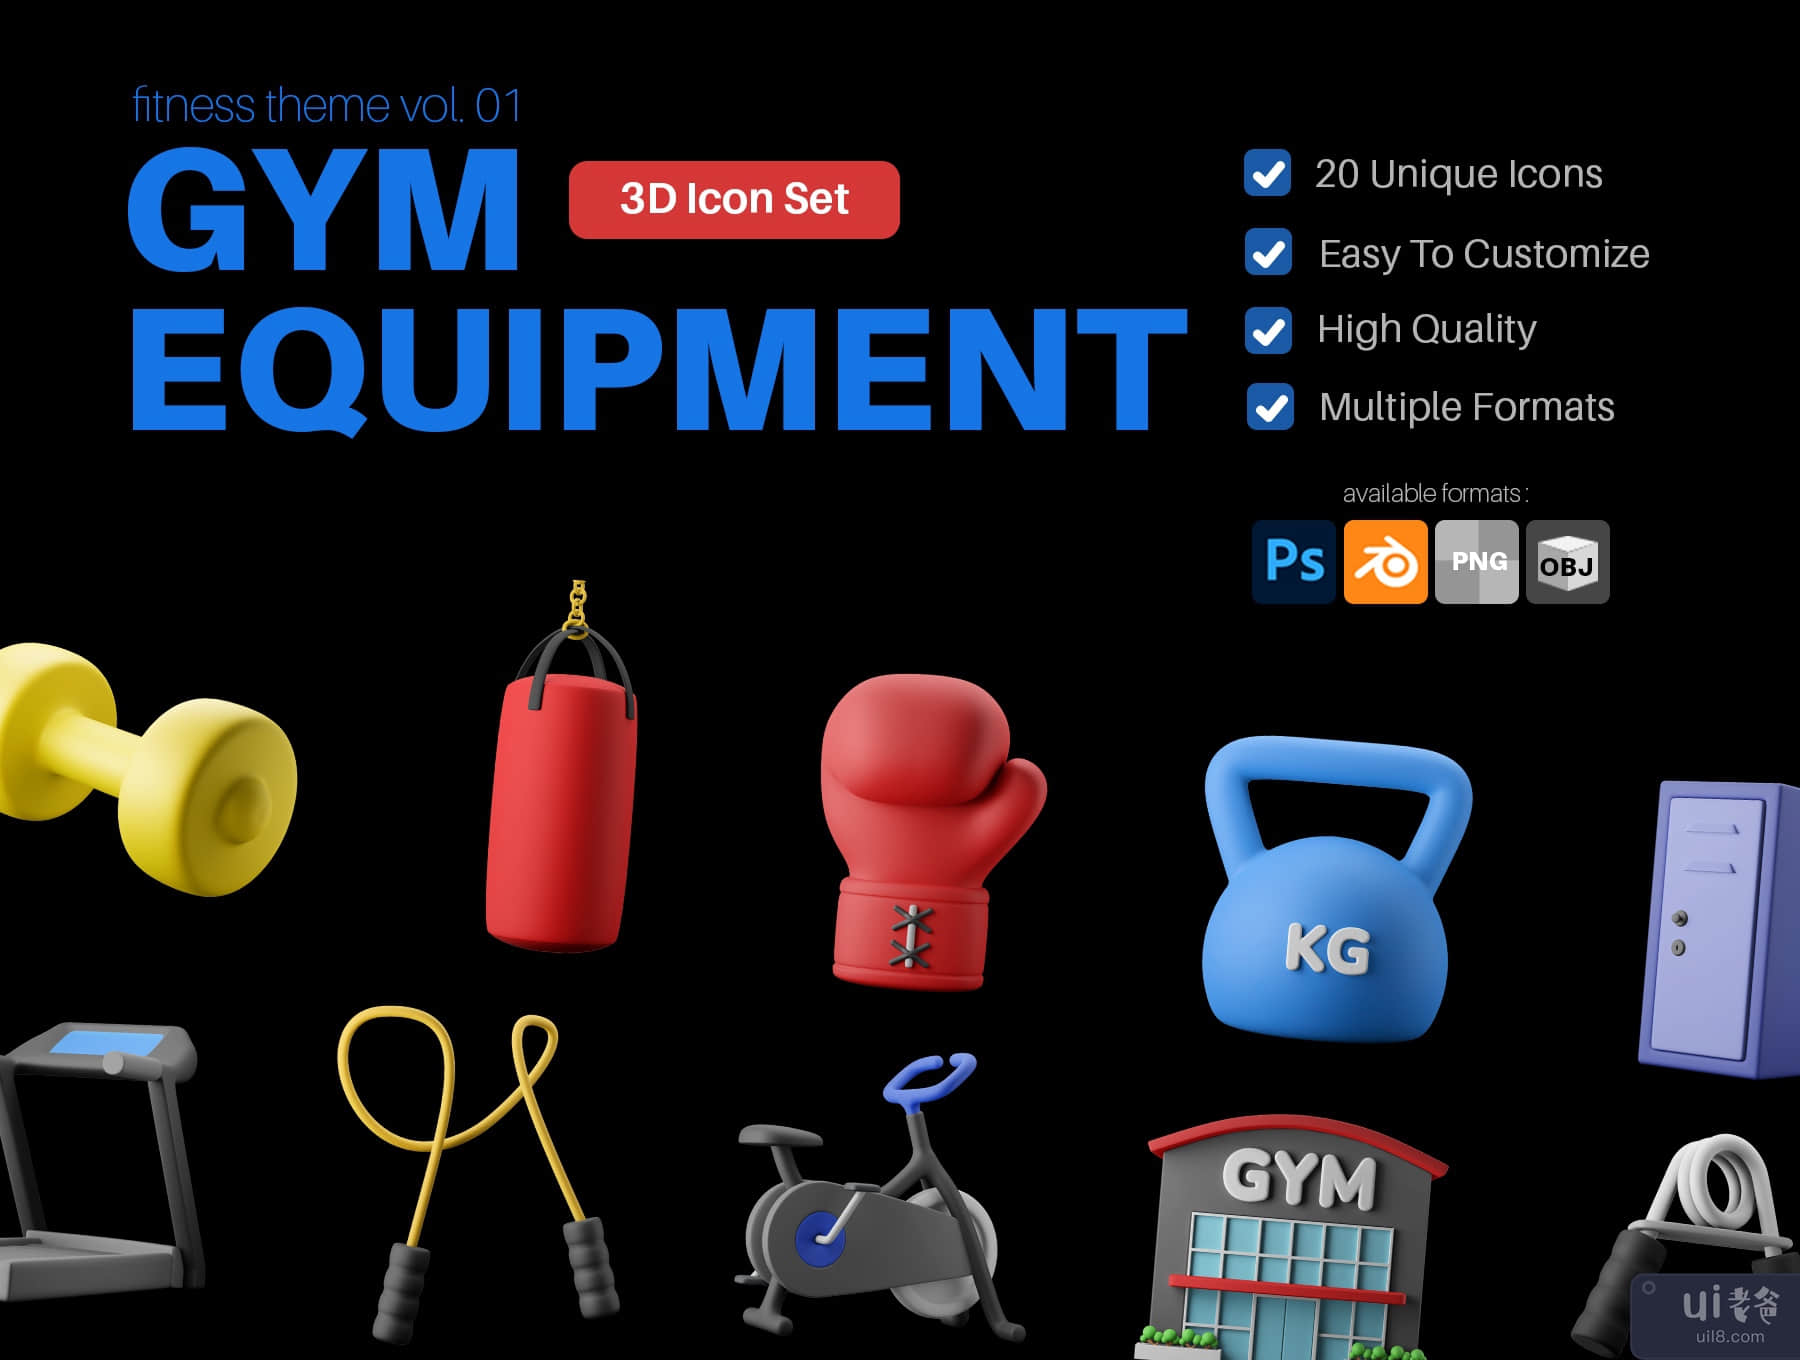 健身房设备 3D 图标包 (Fitness Gym Equipment 3D Icon Pack)插图7